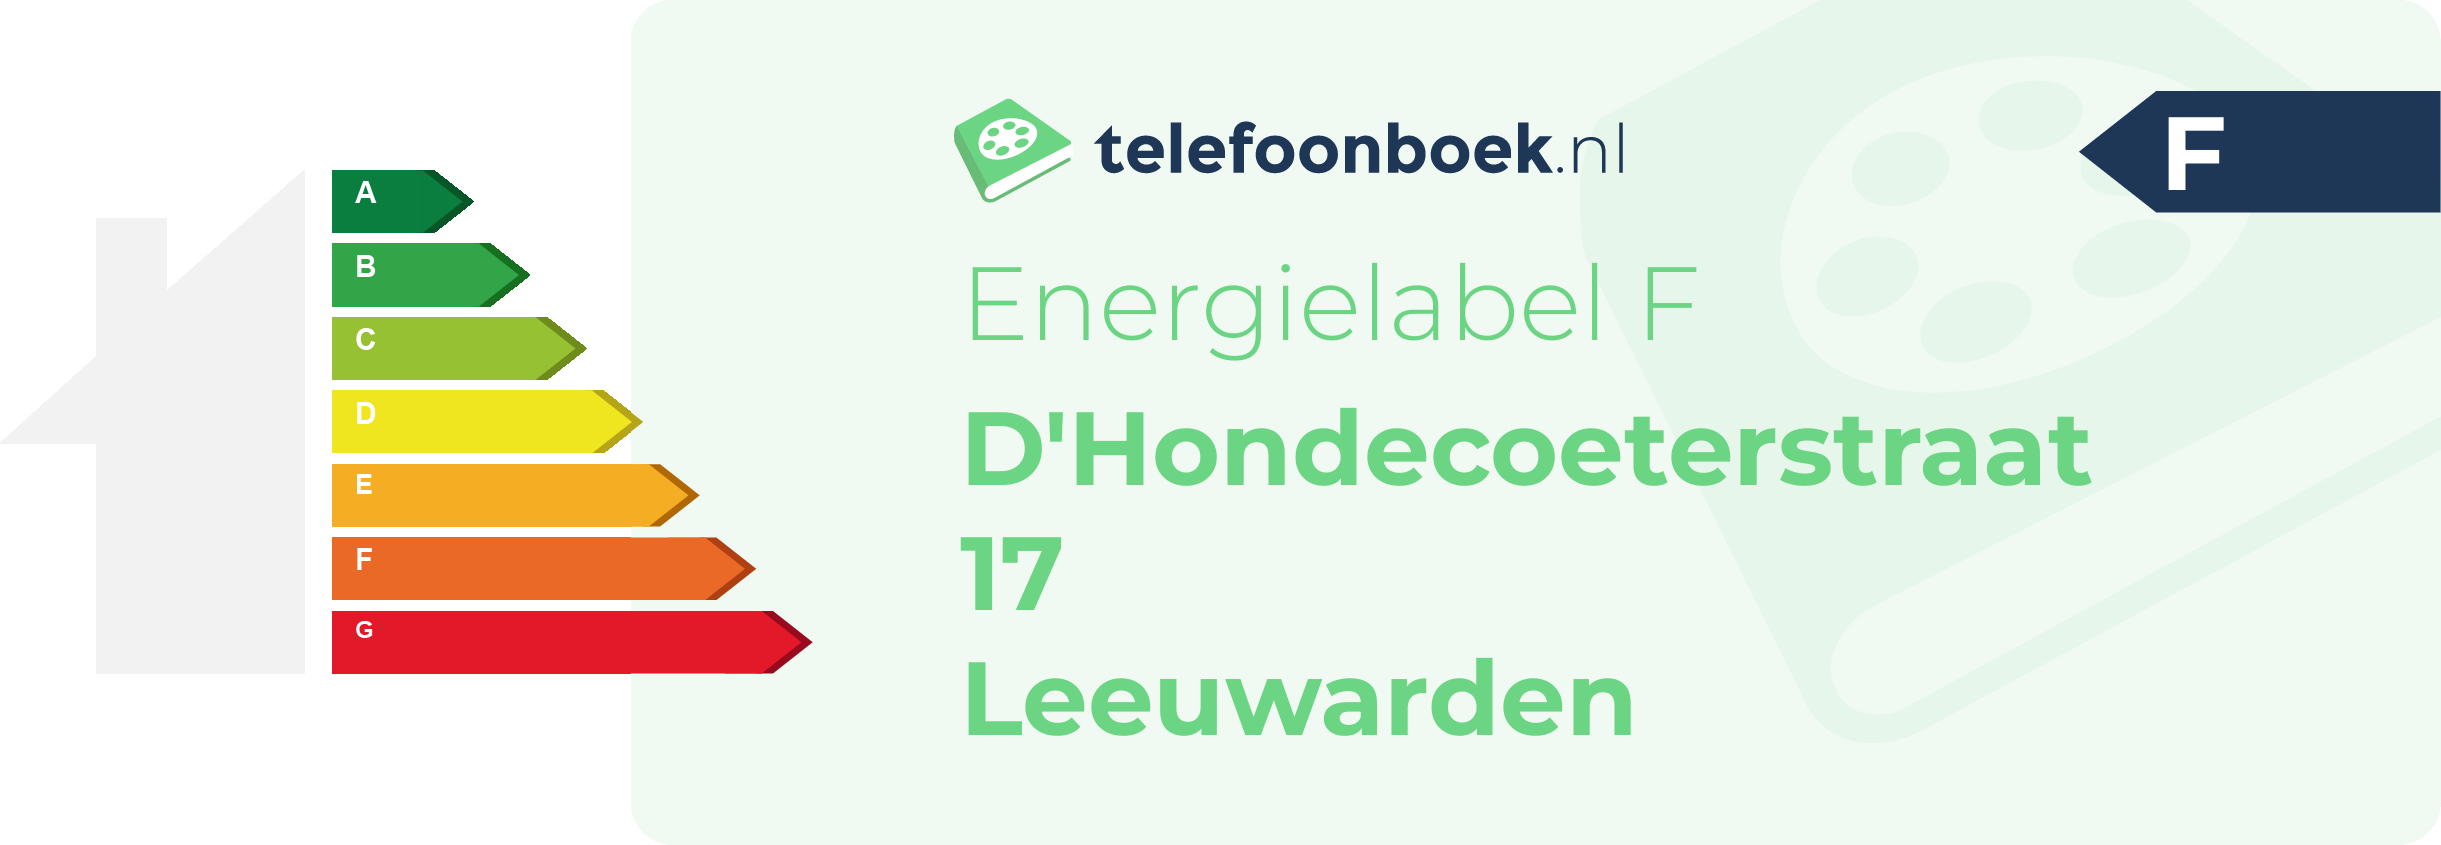 Energielabel D'Hondecoeterstraat 17 Leeuwarden